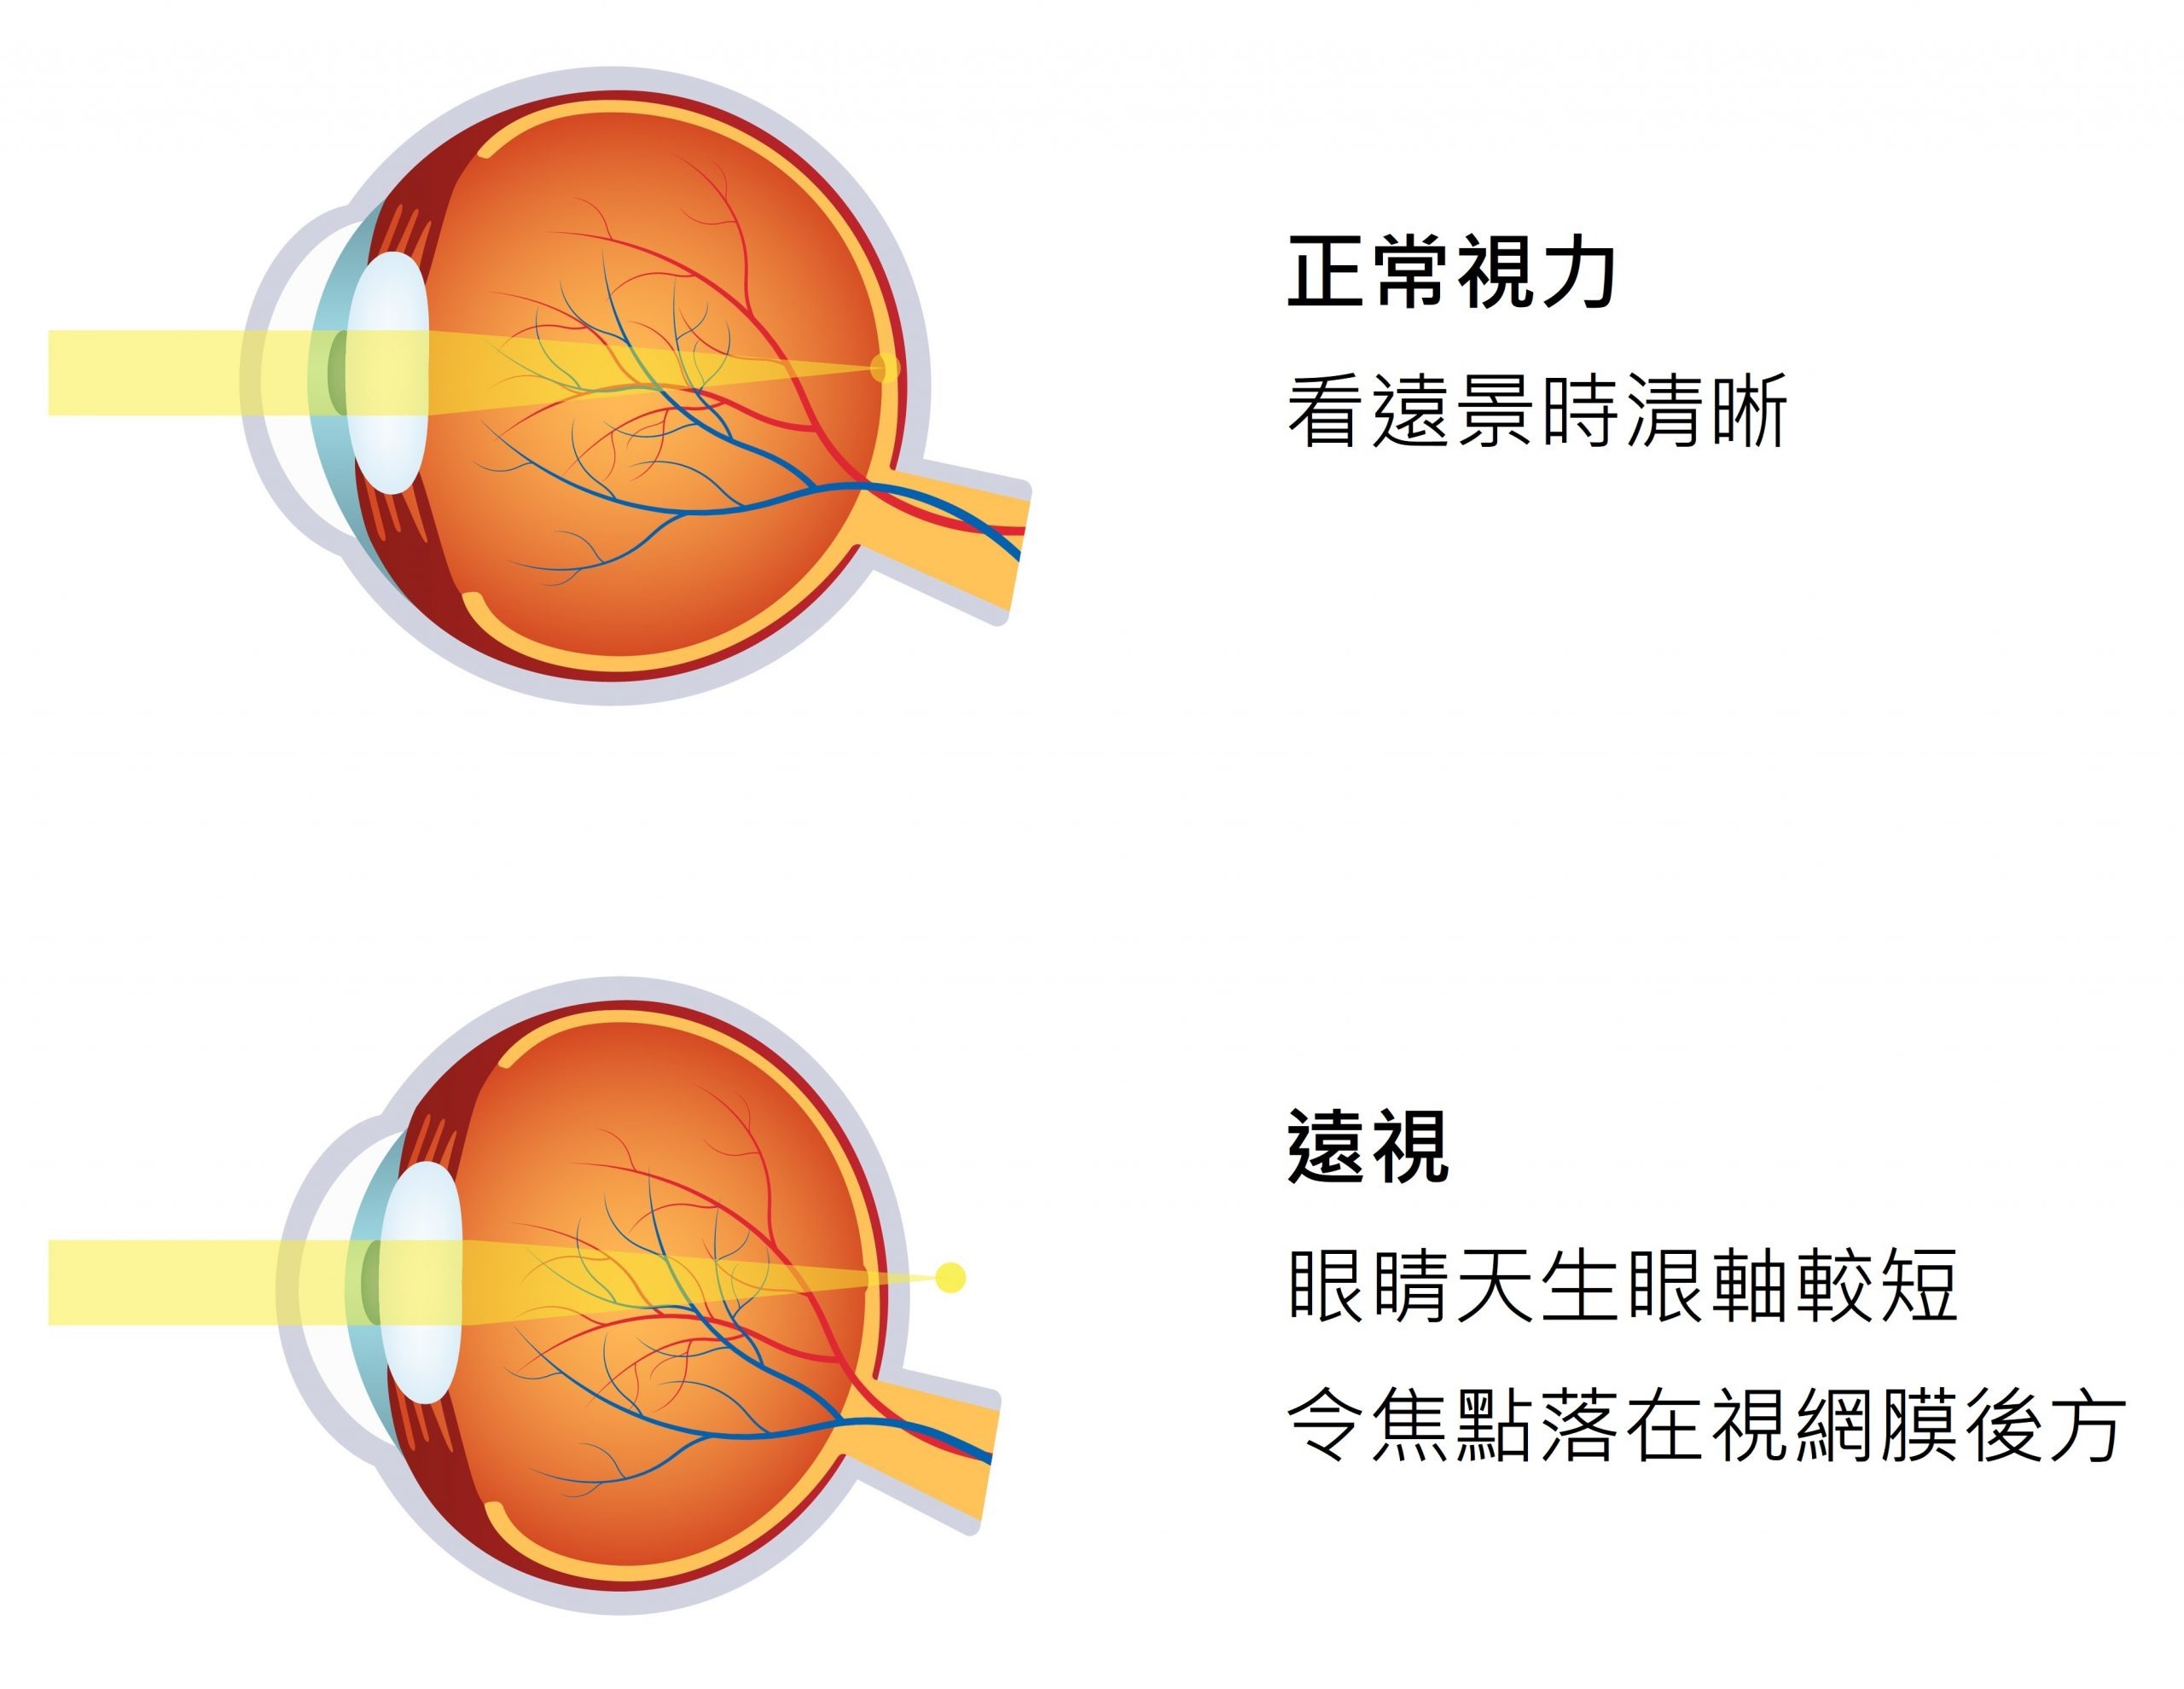 遠視眼球與正常眼球的分別